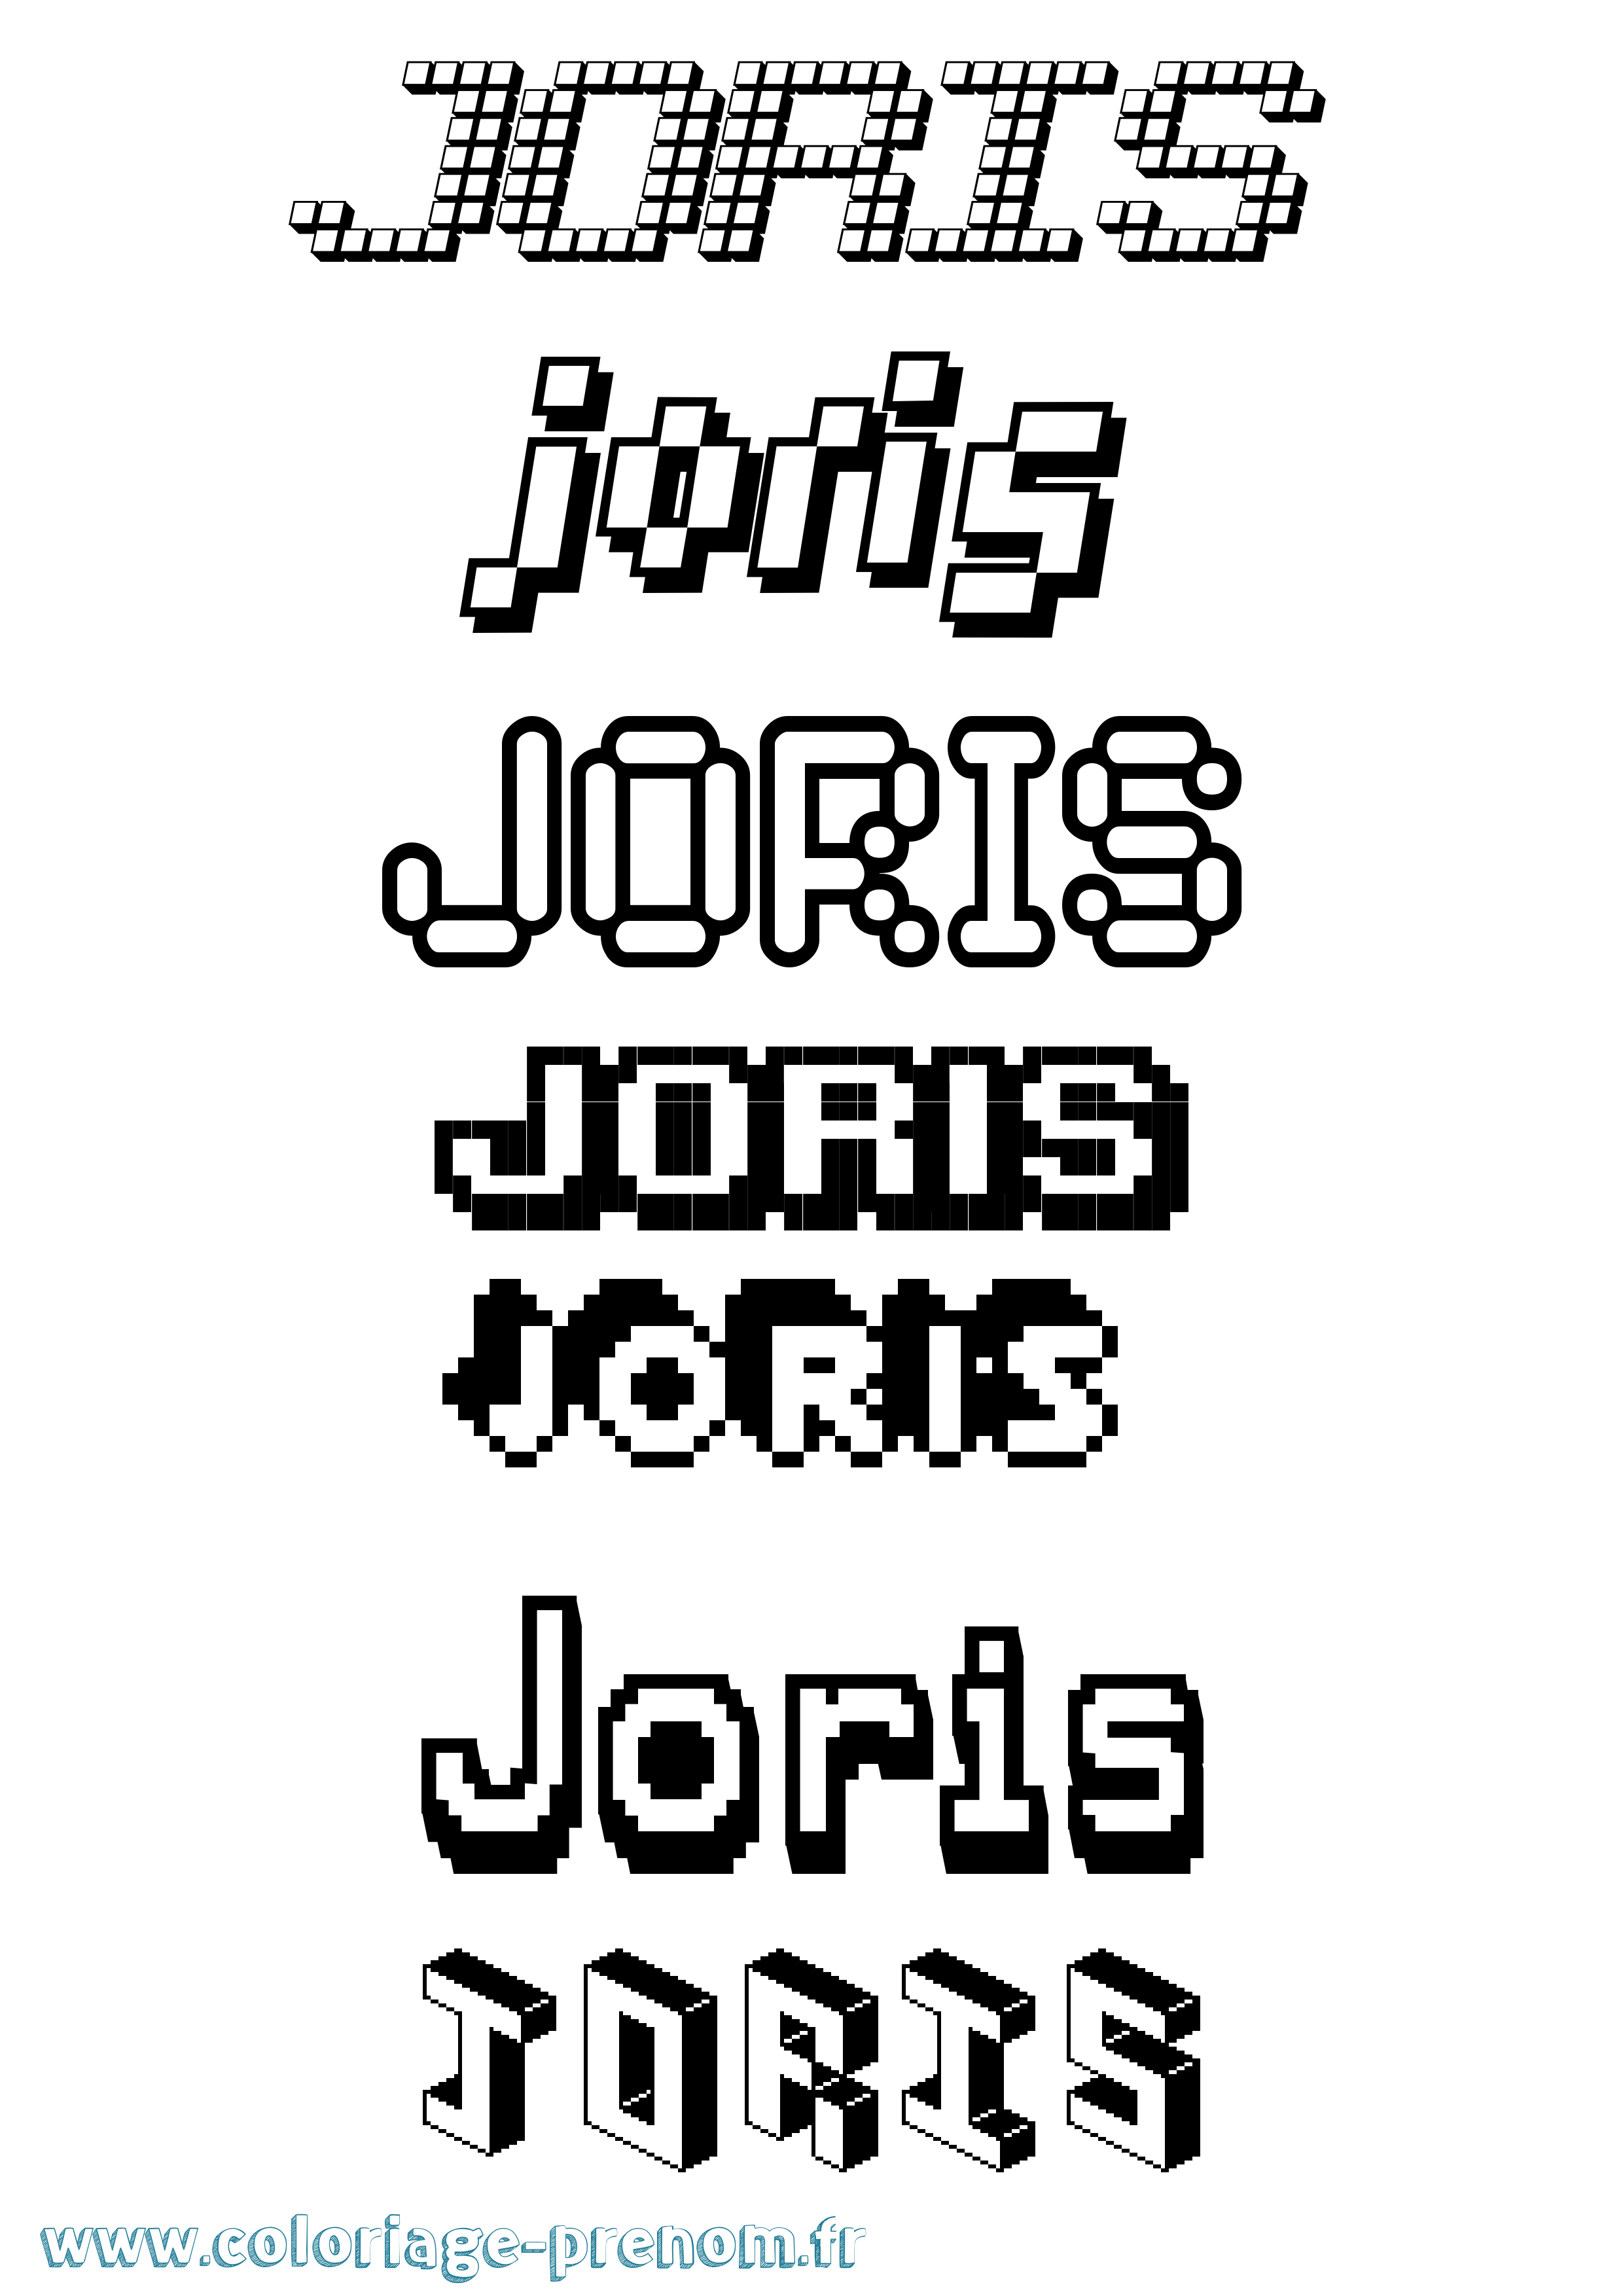 Coloriage prénom Joris